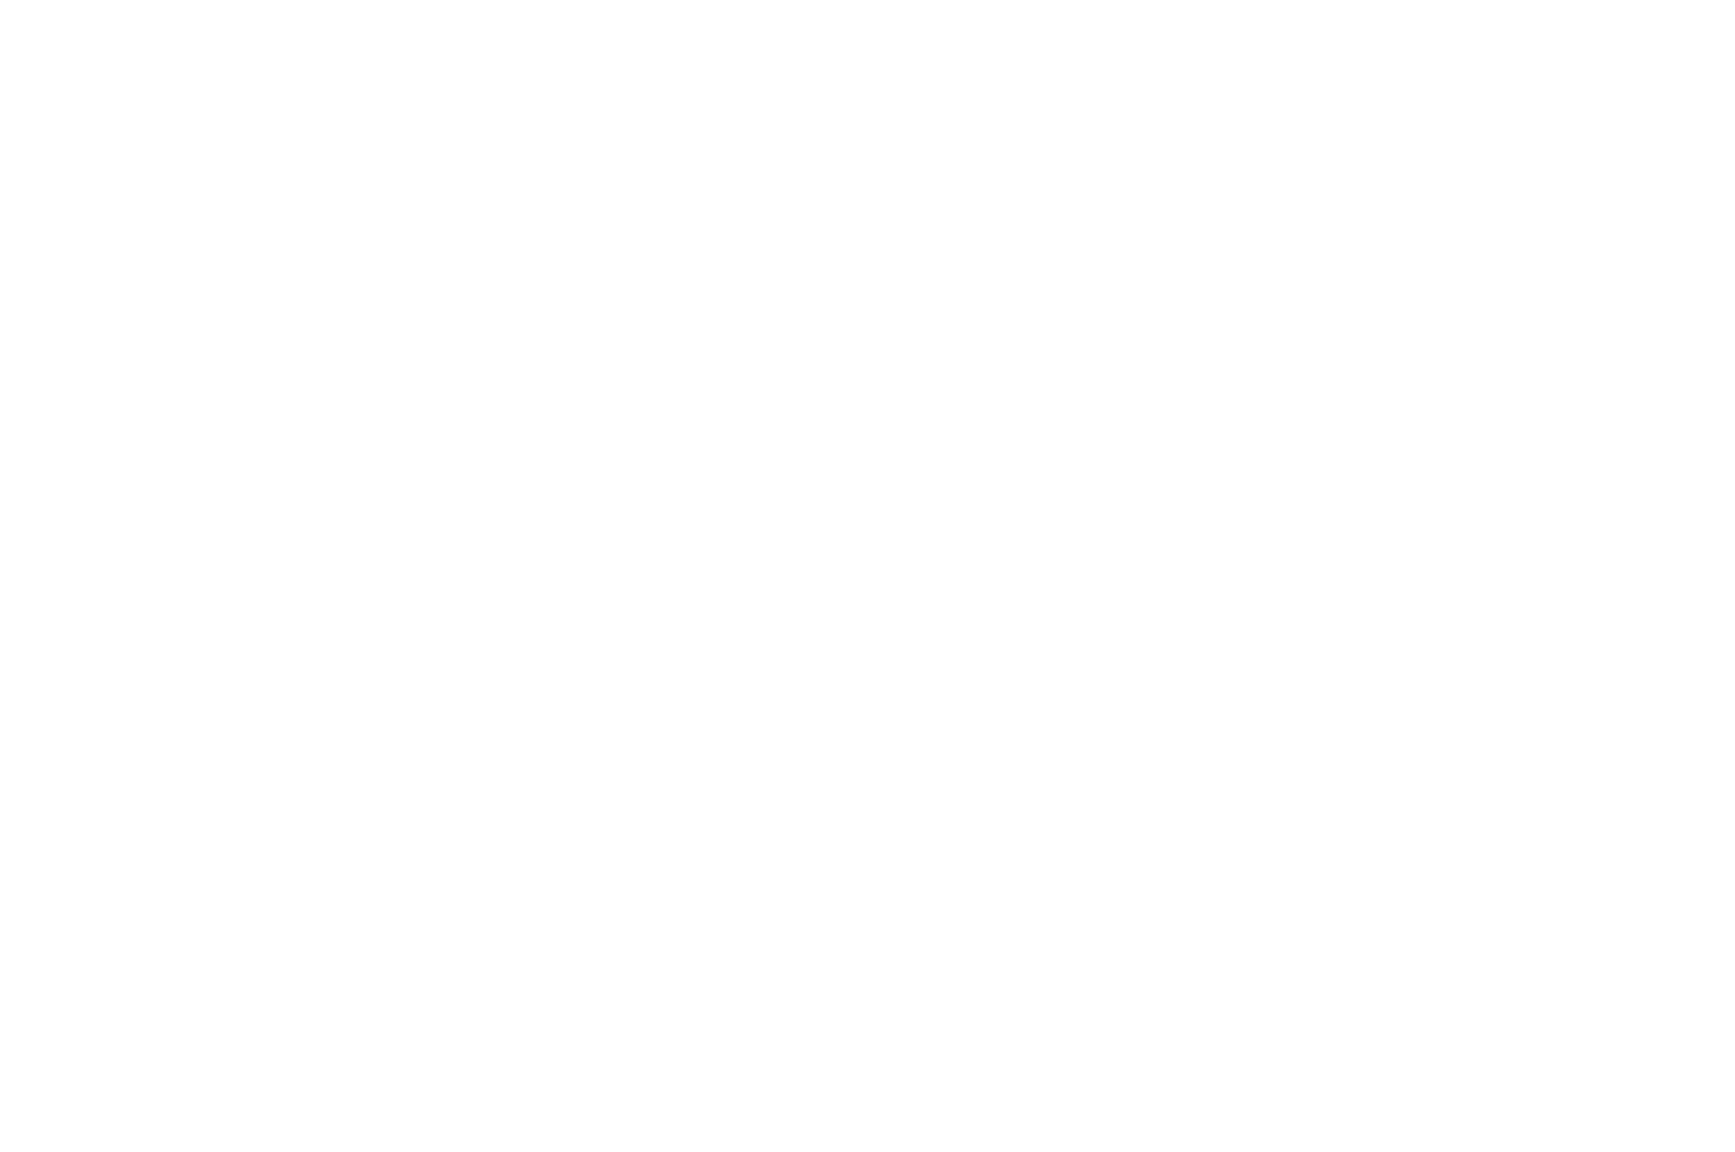 Christian Worldview Film Festival Best Gospel Presentation Award